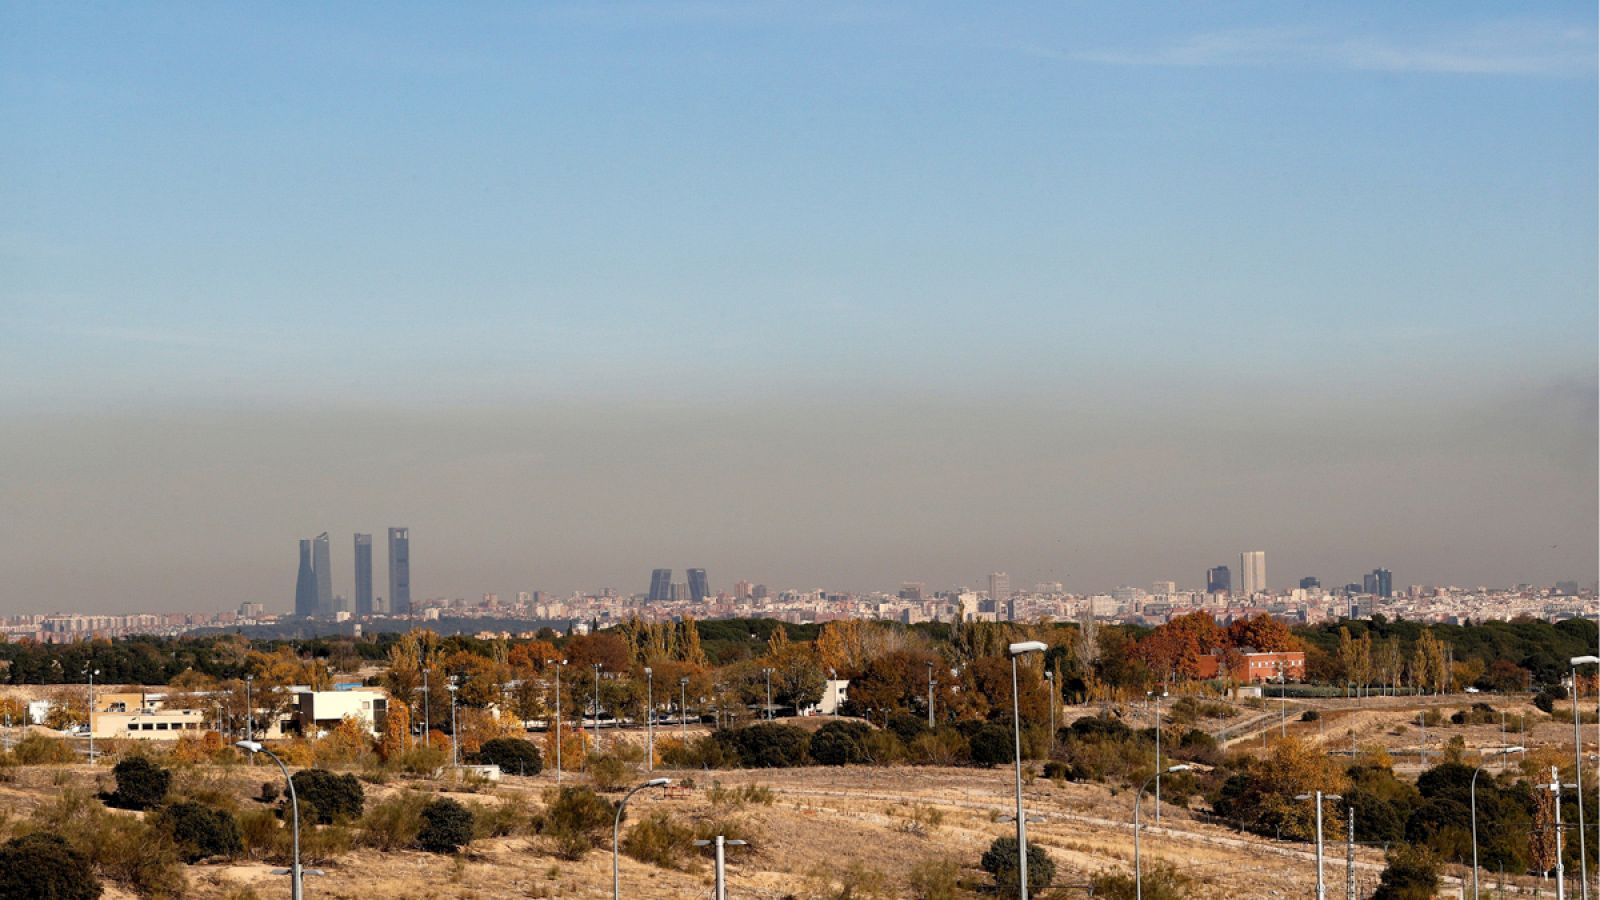 Vista de la capa de contaminación que cubre la ciudad de Madrid